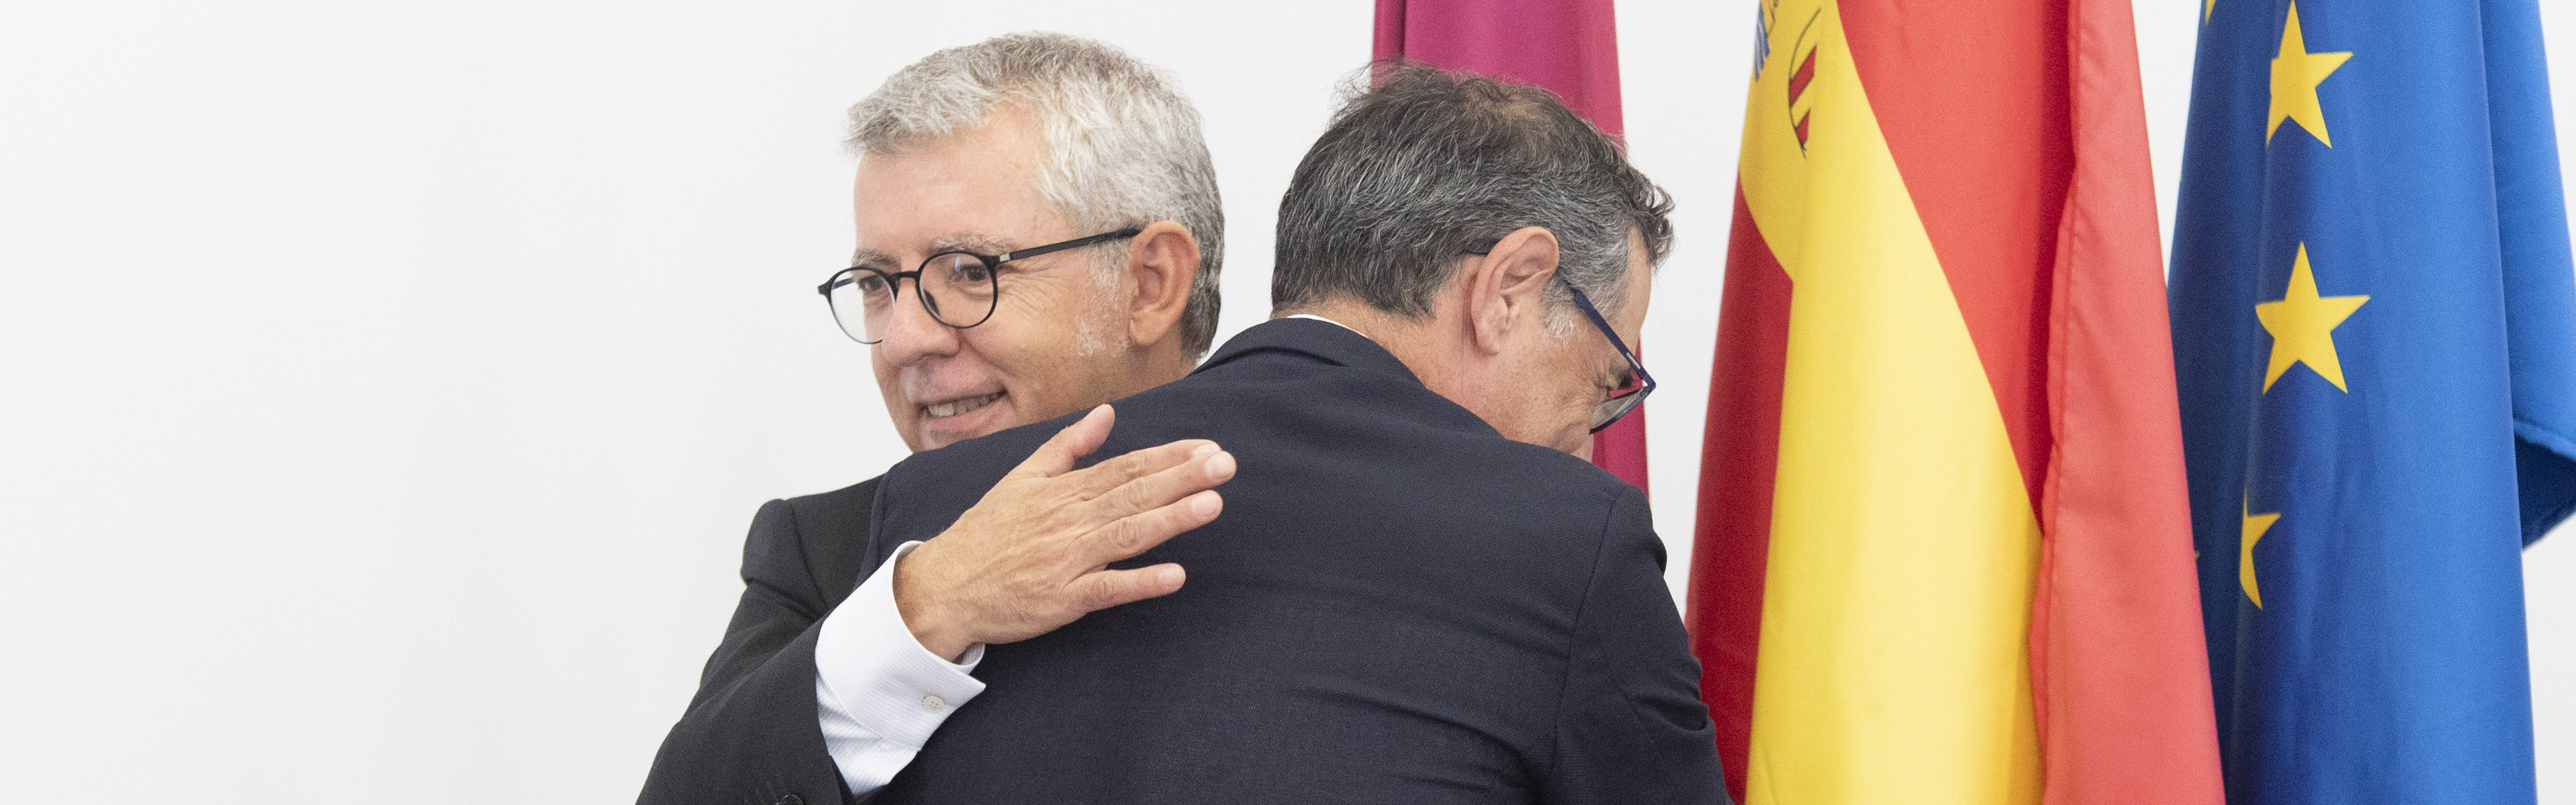 Prudencio José Riquelme renueva mandato como decano de la facultad de Ciencias del Trabajo de la UMU